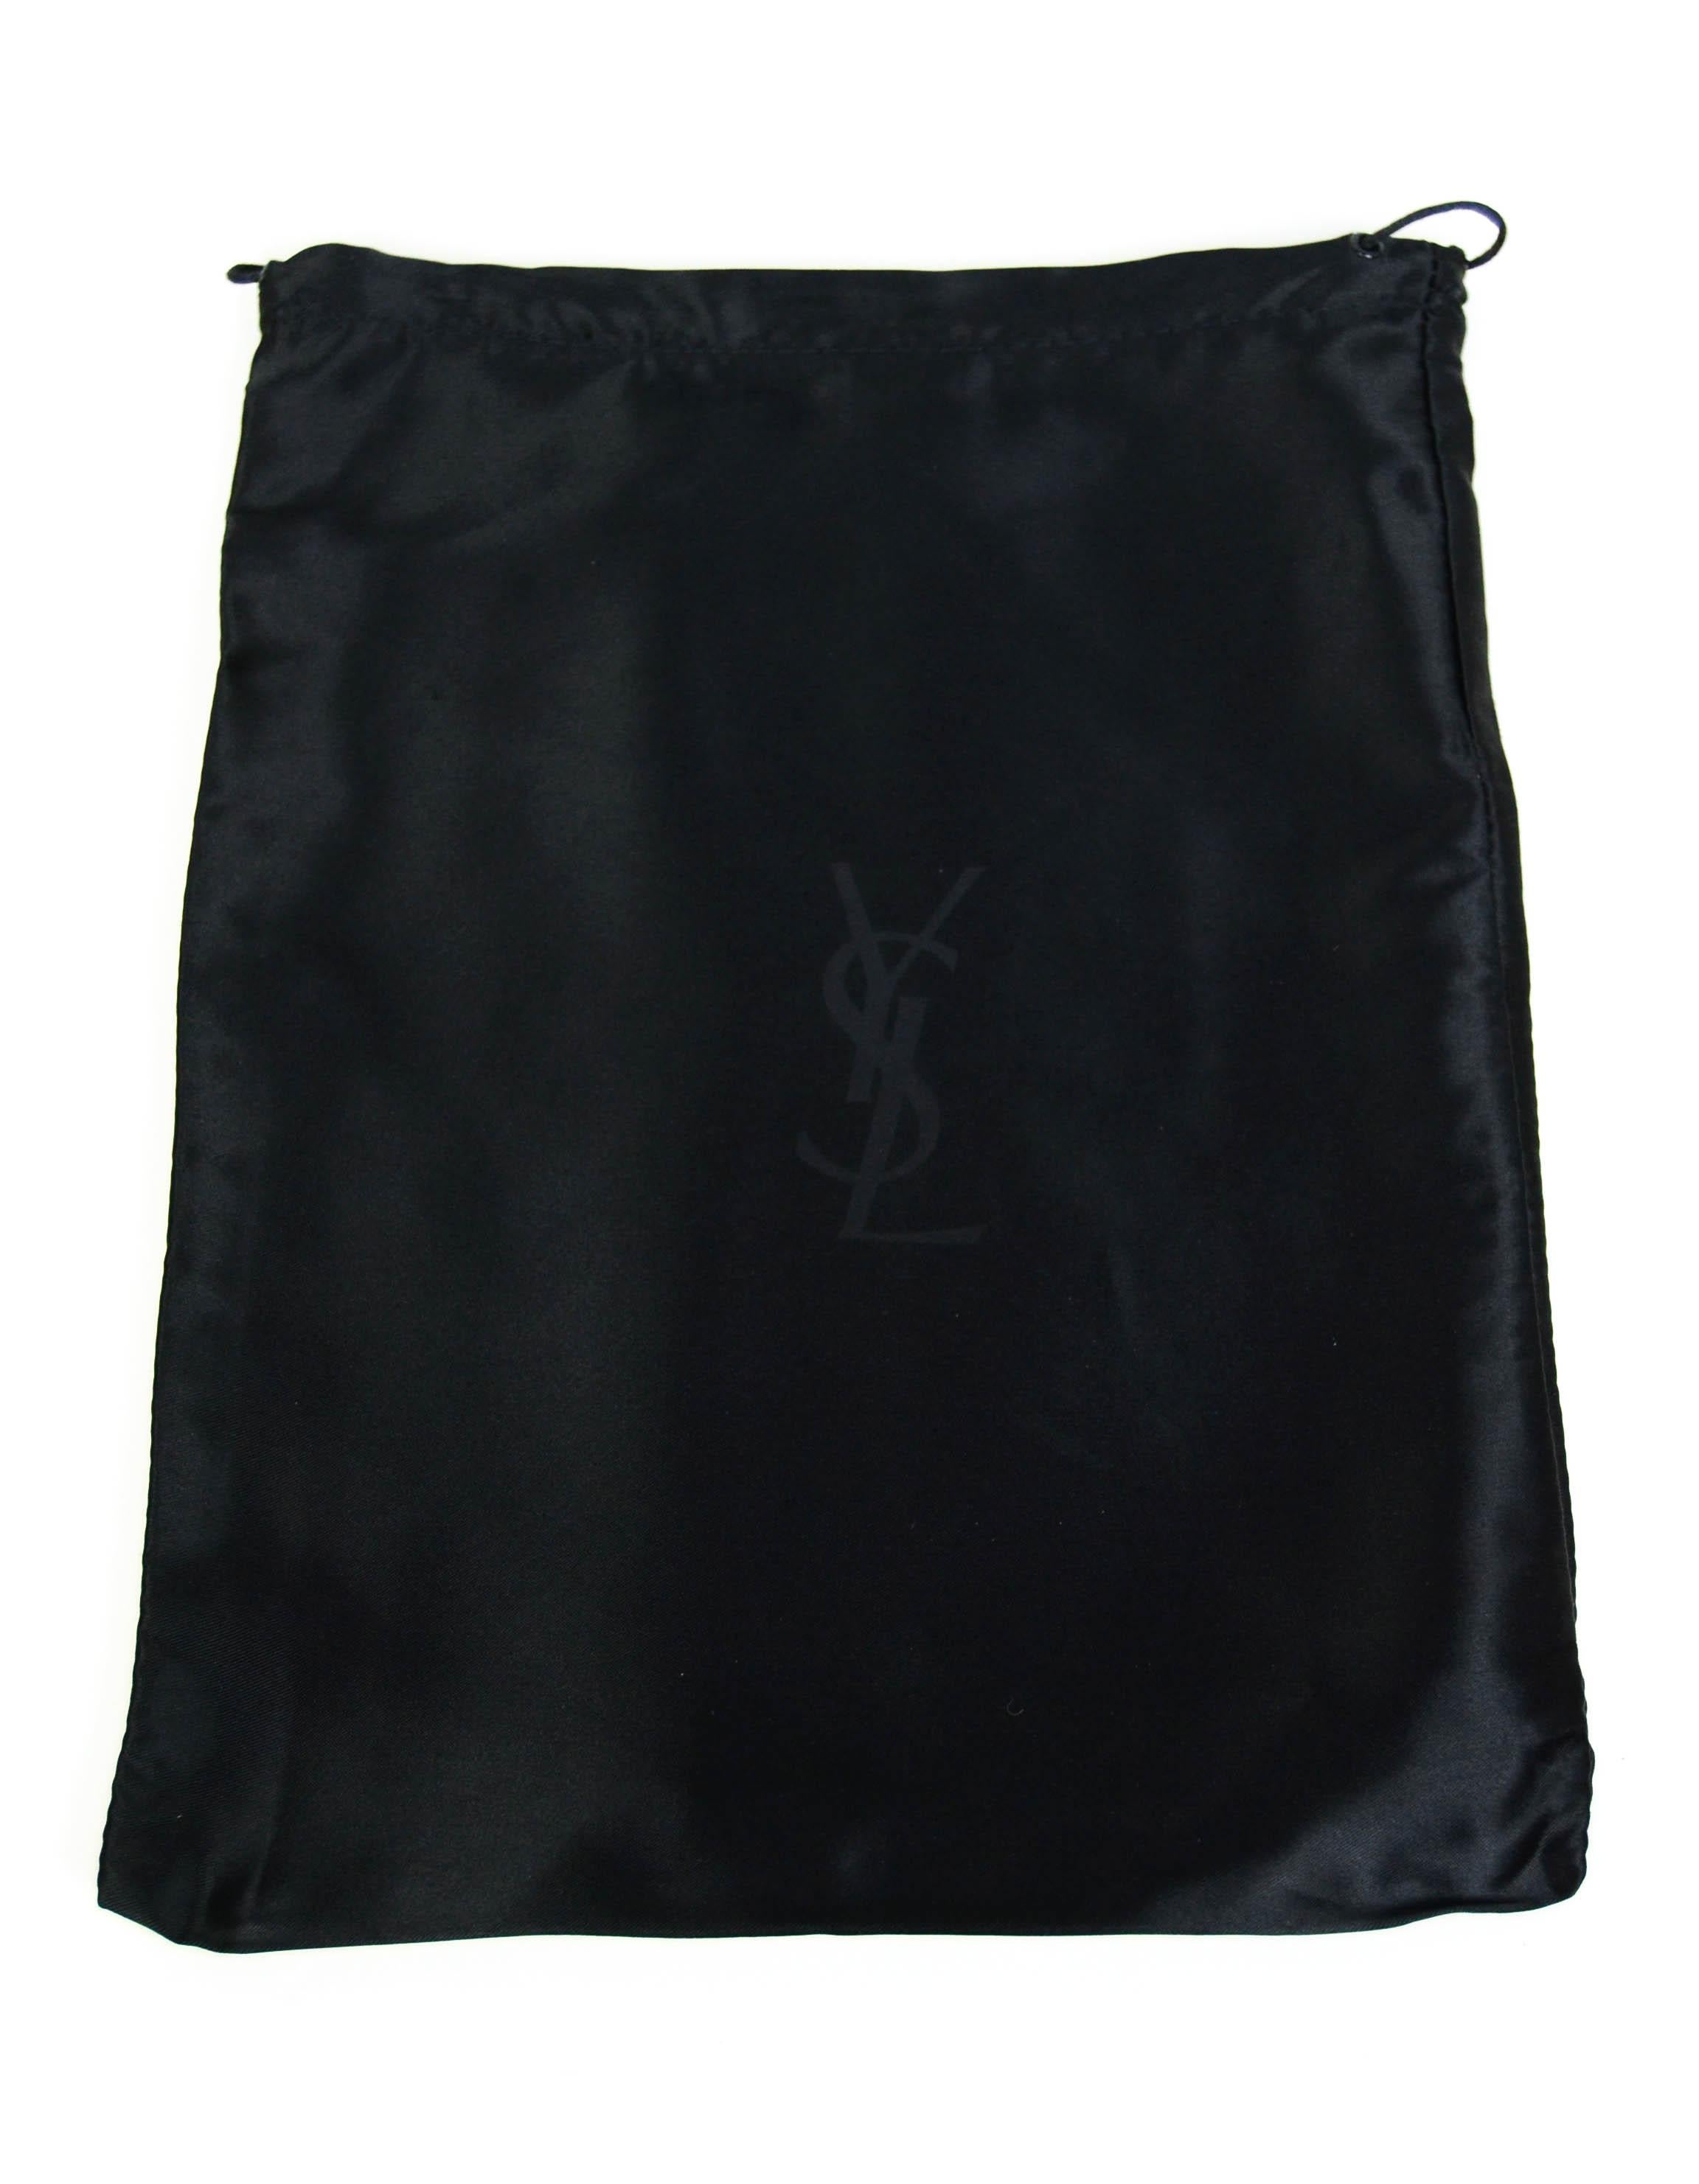 Yves Saint Laurent Black Patent Monogram Large Belle De Jour Clutch Bag 1